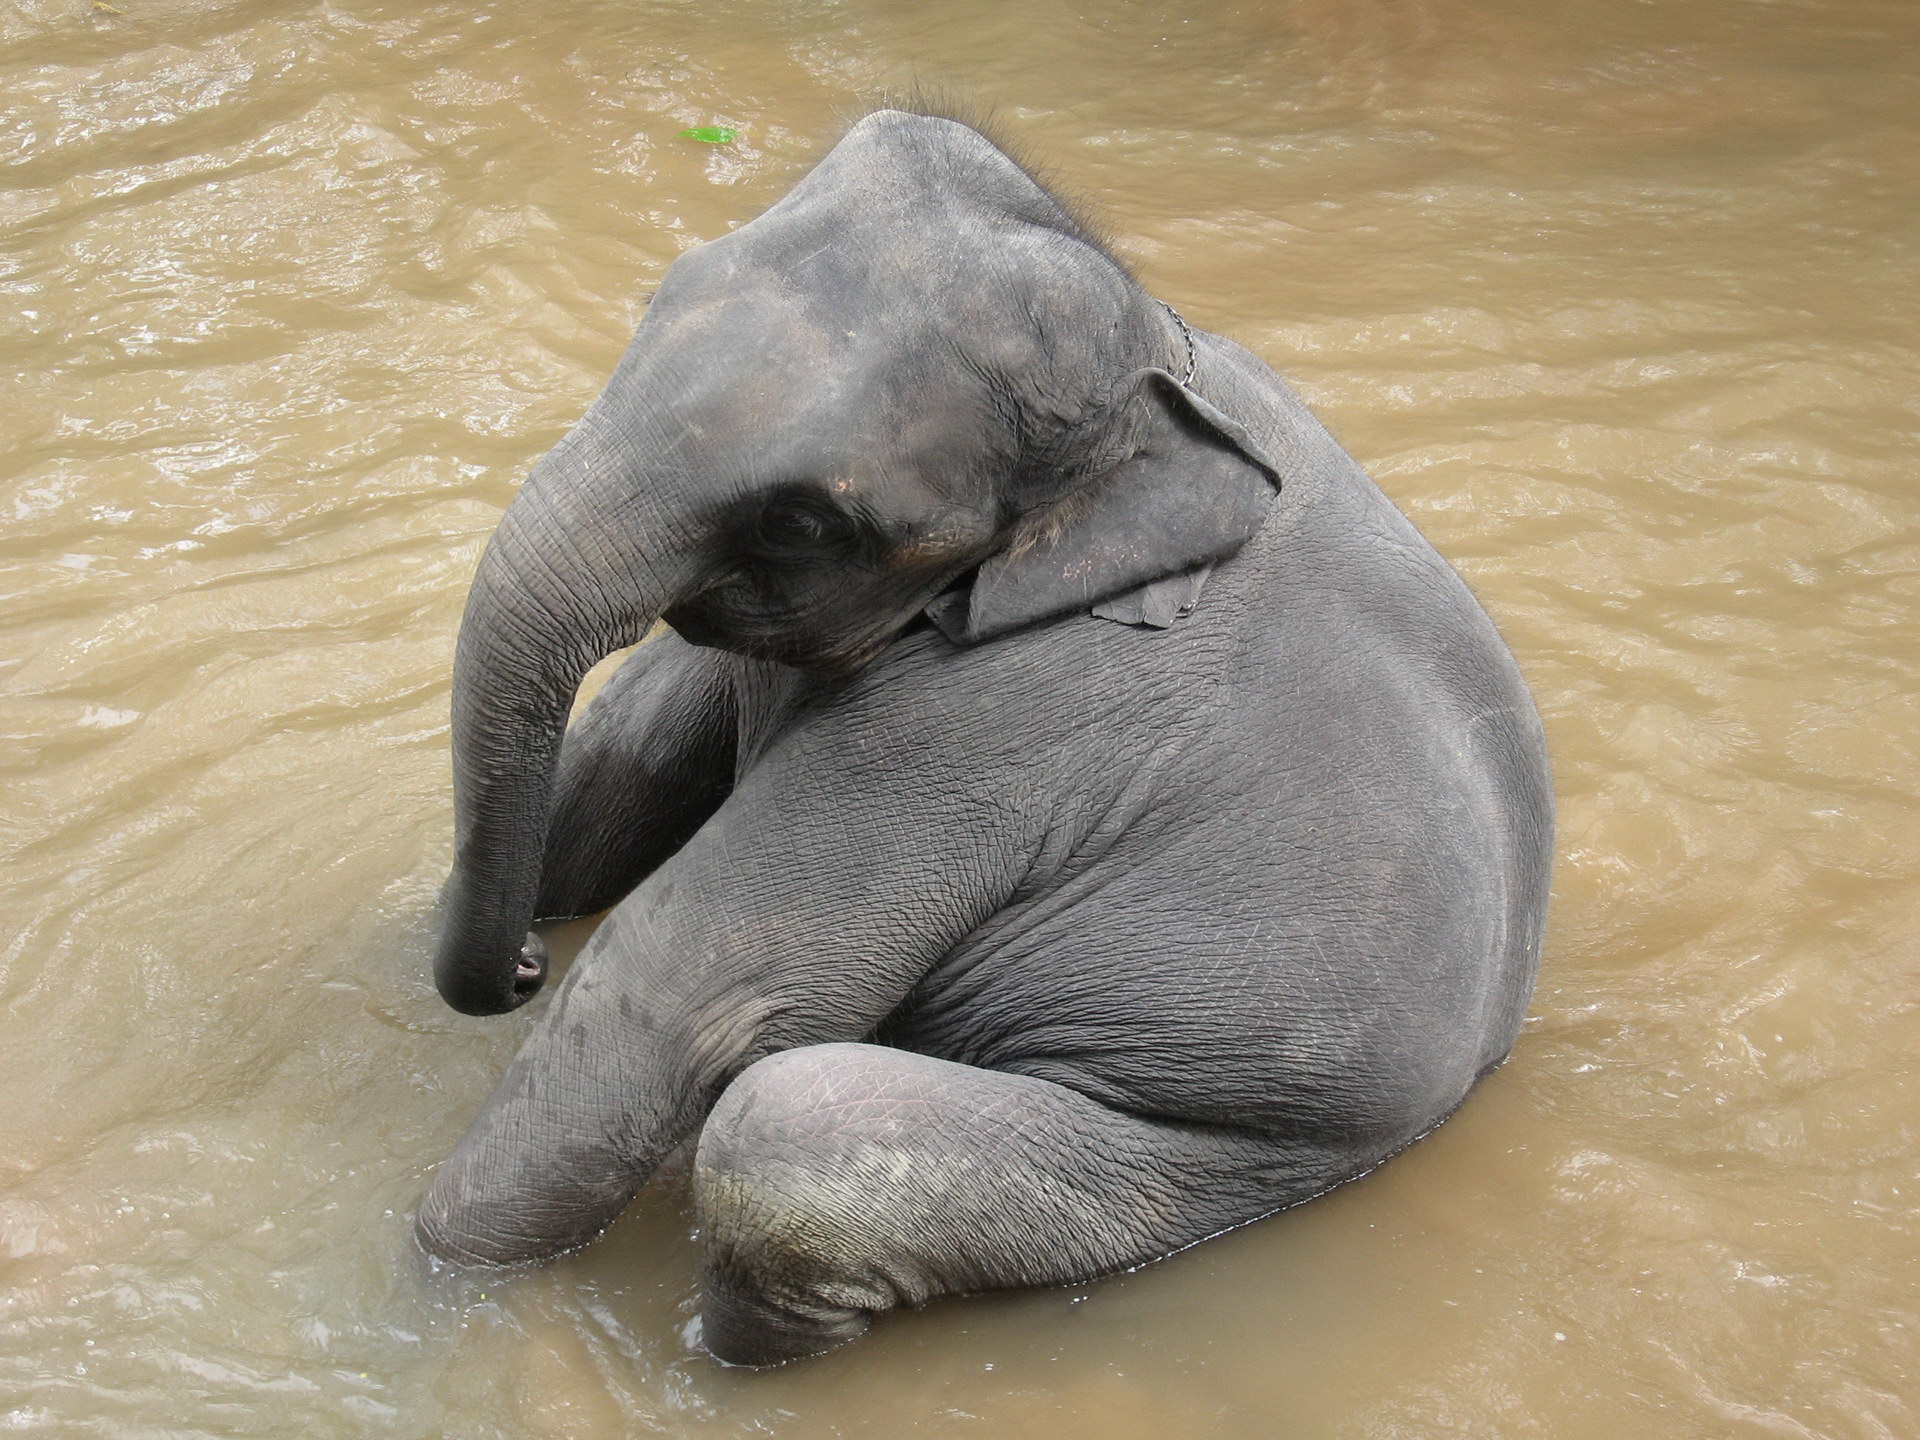 ช้างทารกนั่งอยู่ในน้ำ